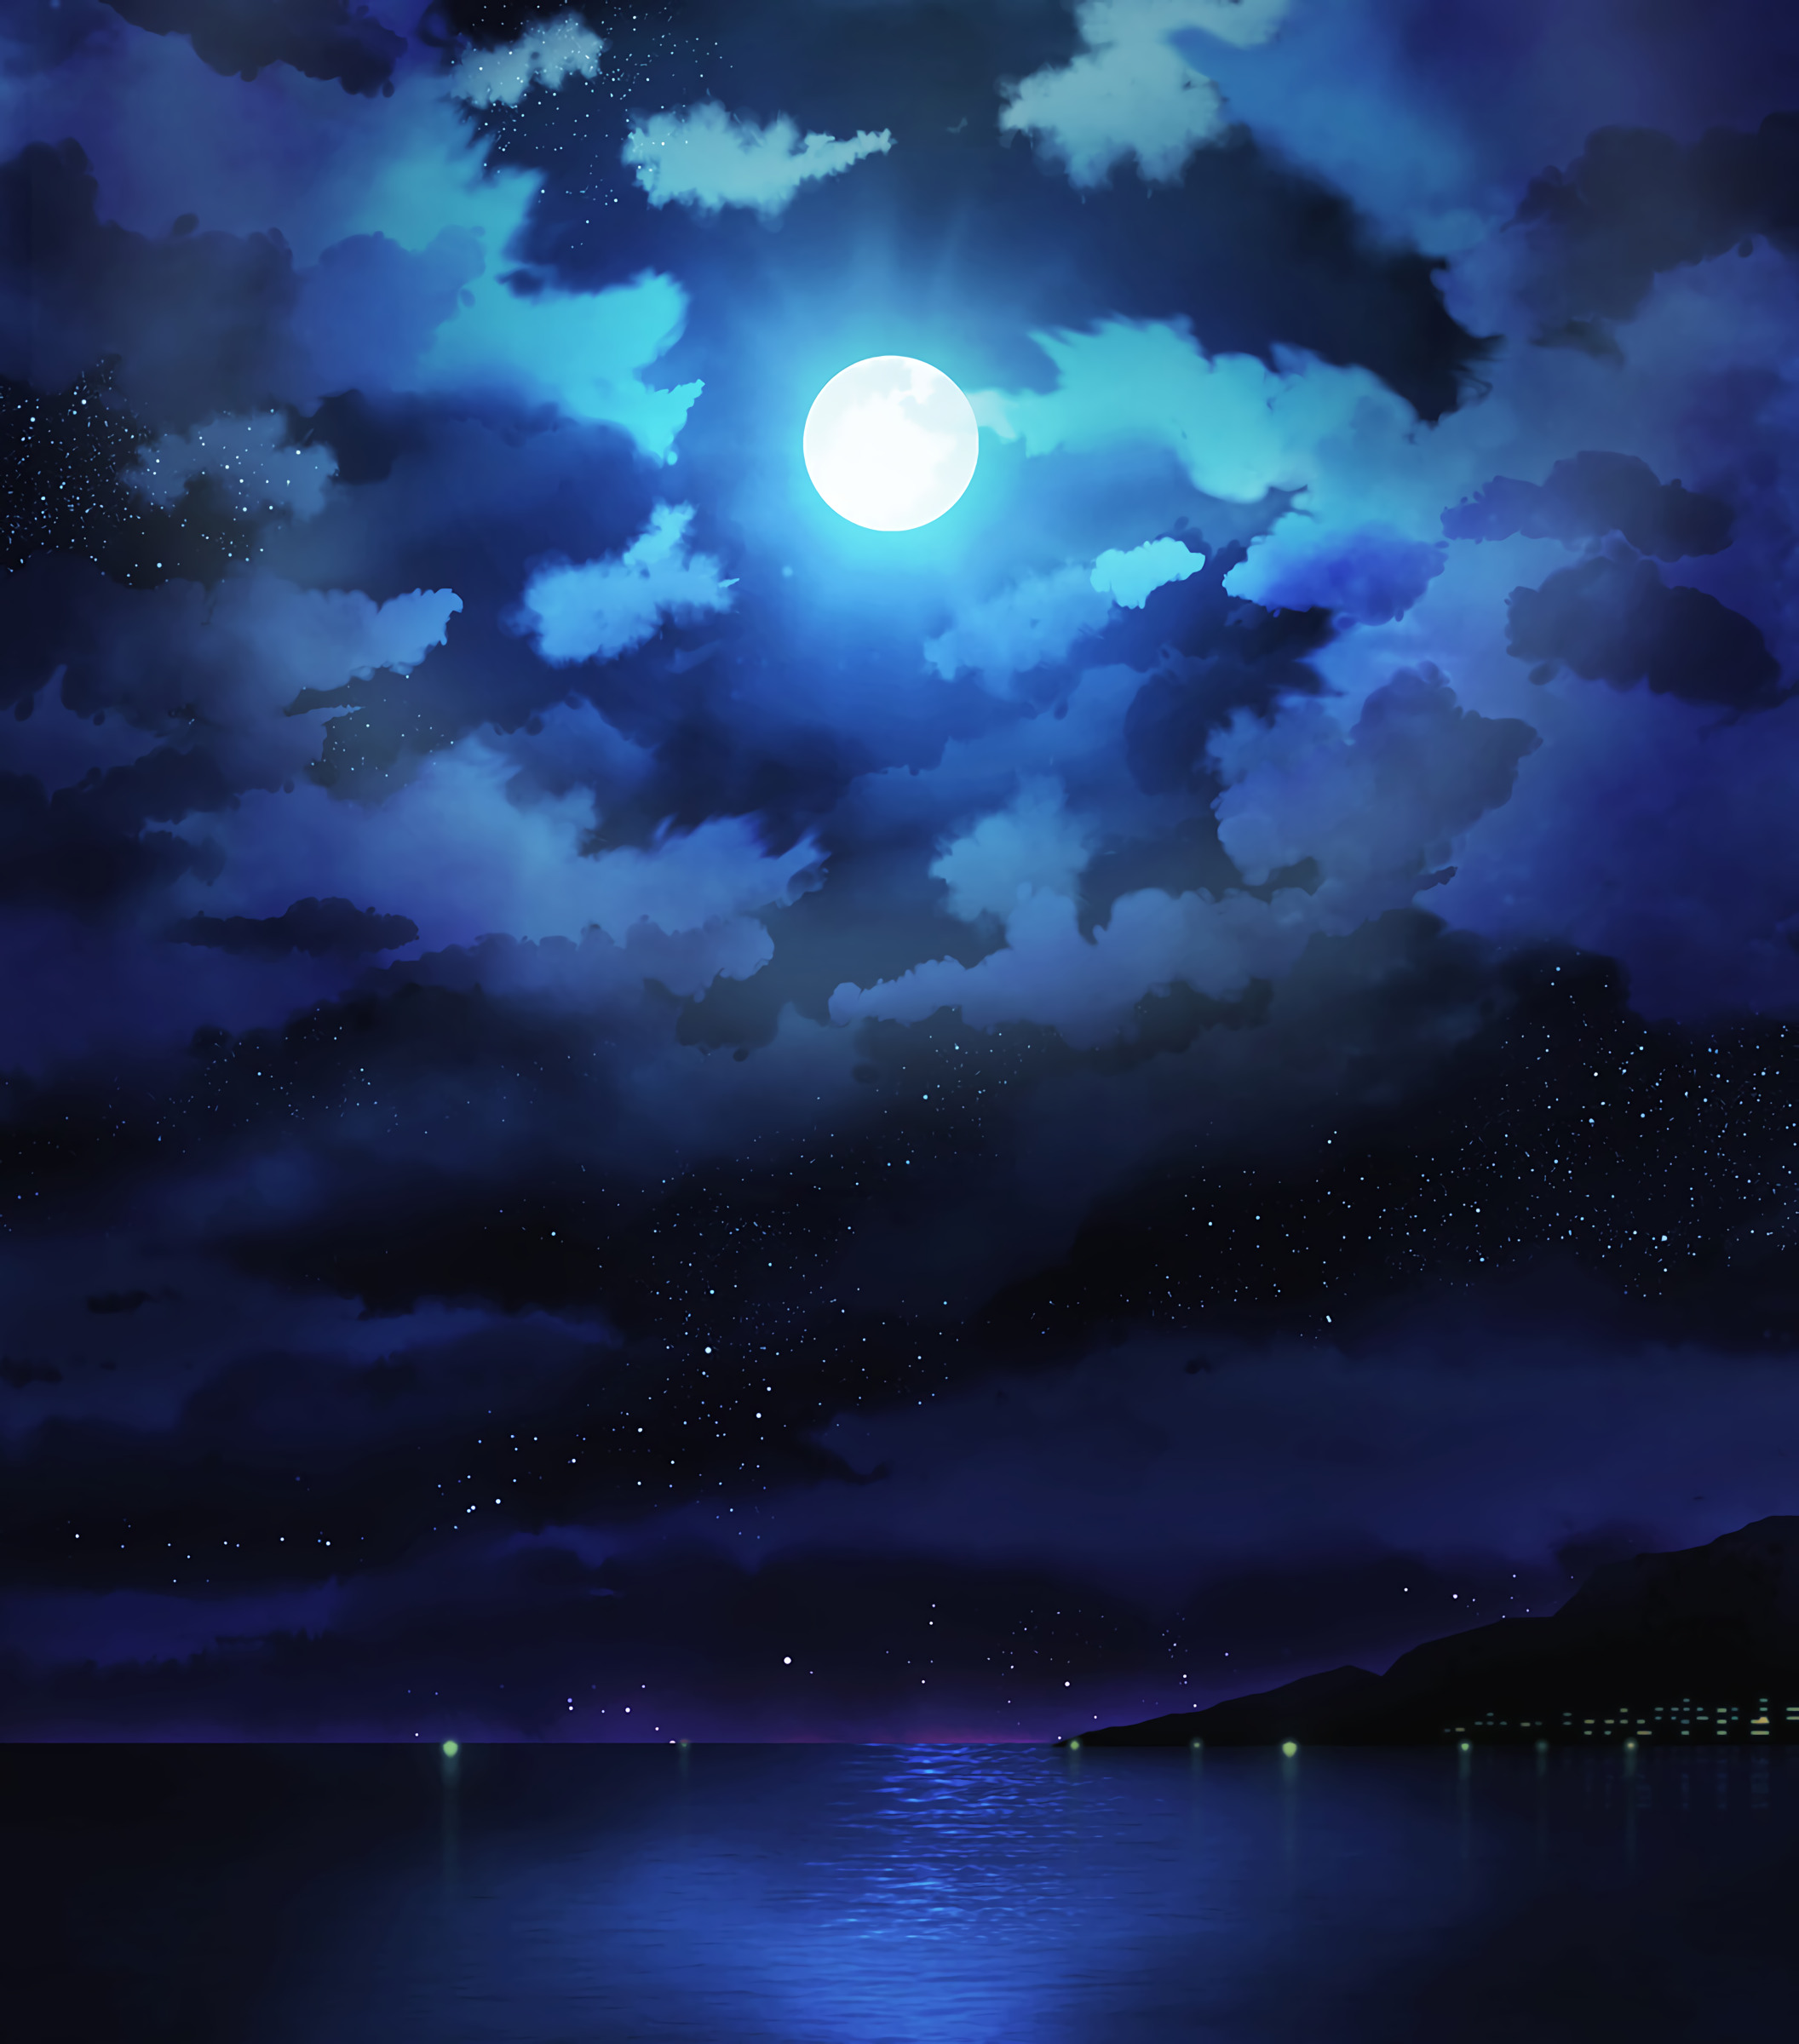 Скачать обои бесплатно Облака, Горизонт, Звезды, Ночь, Луна, Море, Арт картинка на рабочий стол ПК